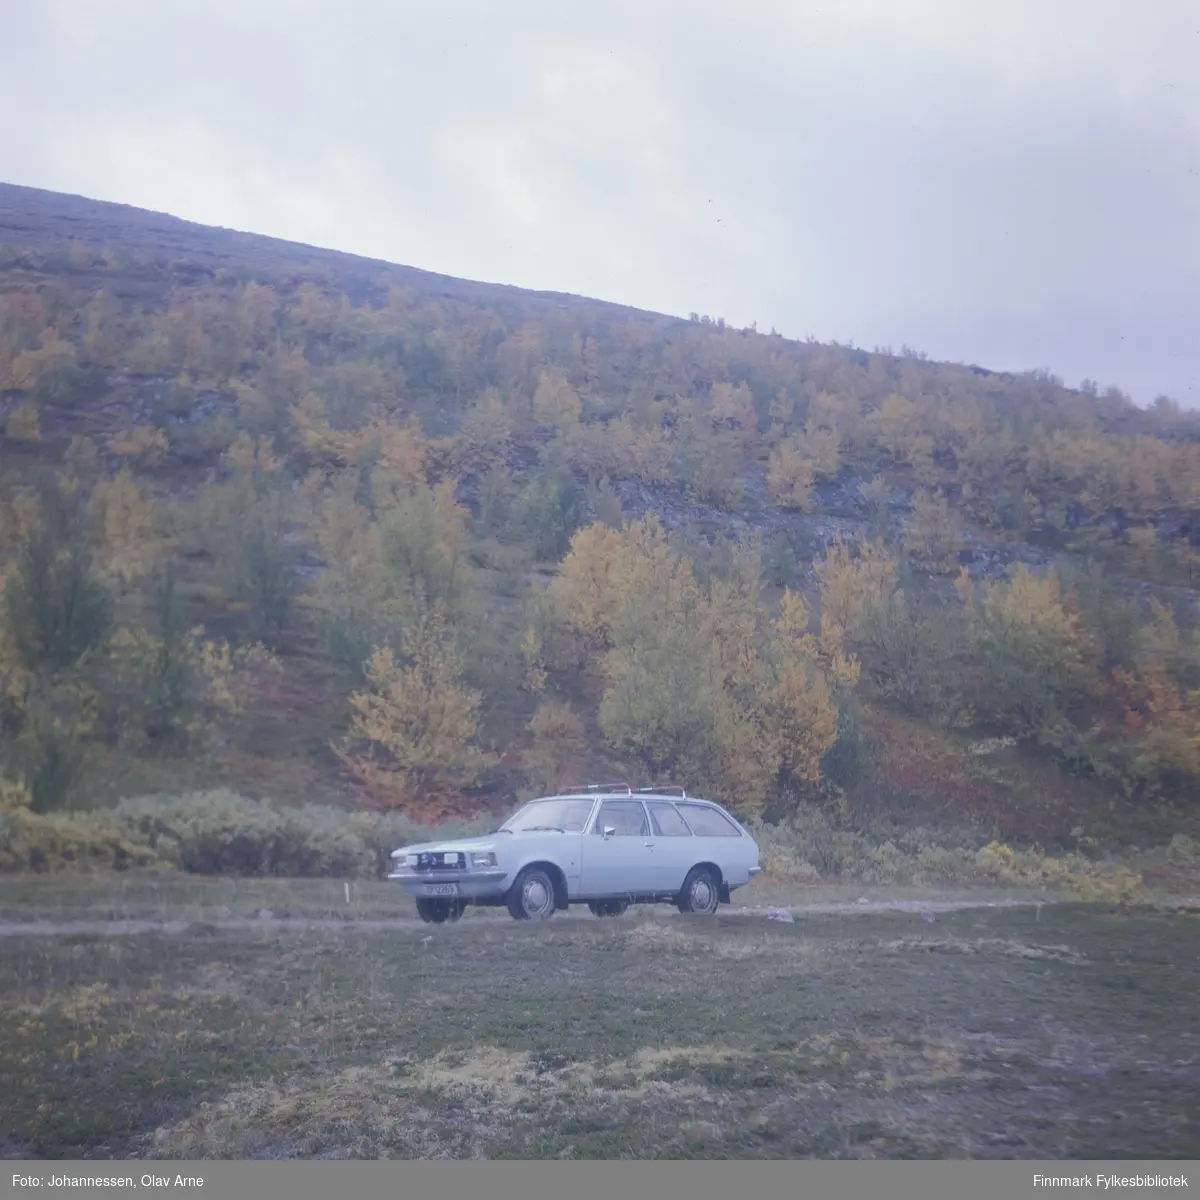 Bil står parkert på siden av grusvei, muligens i Syltefjorddalen (Finnmark)

Bilen tilhørte maleren Olav Johannessen og er en Opel Rekord 

Skiltnummer: ZP 12269